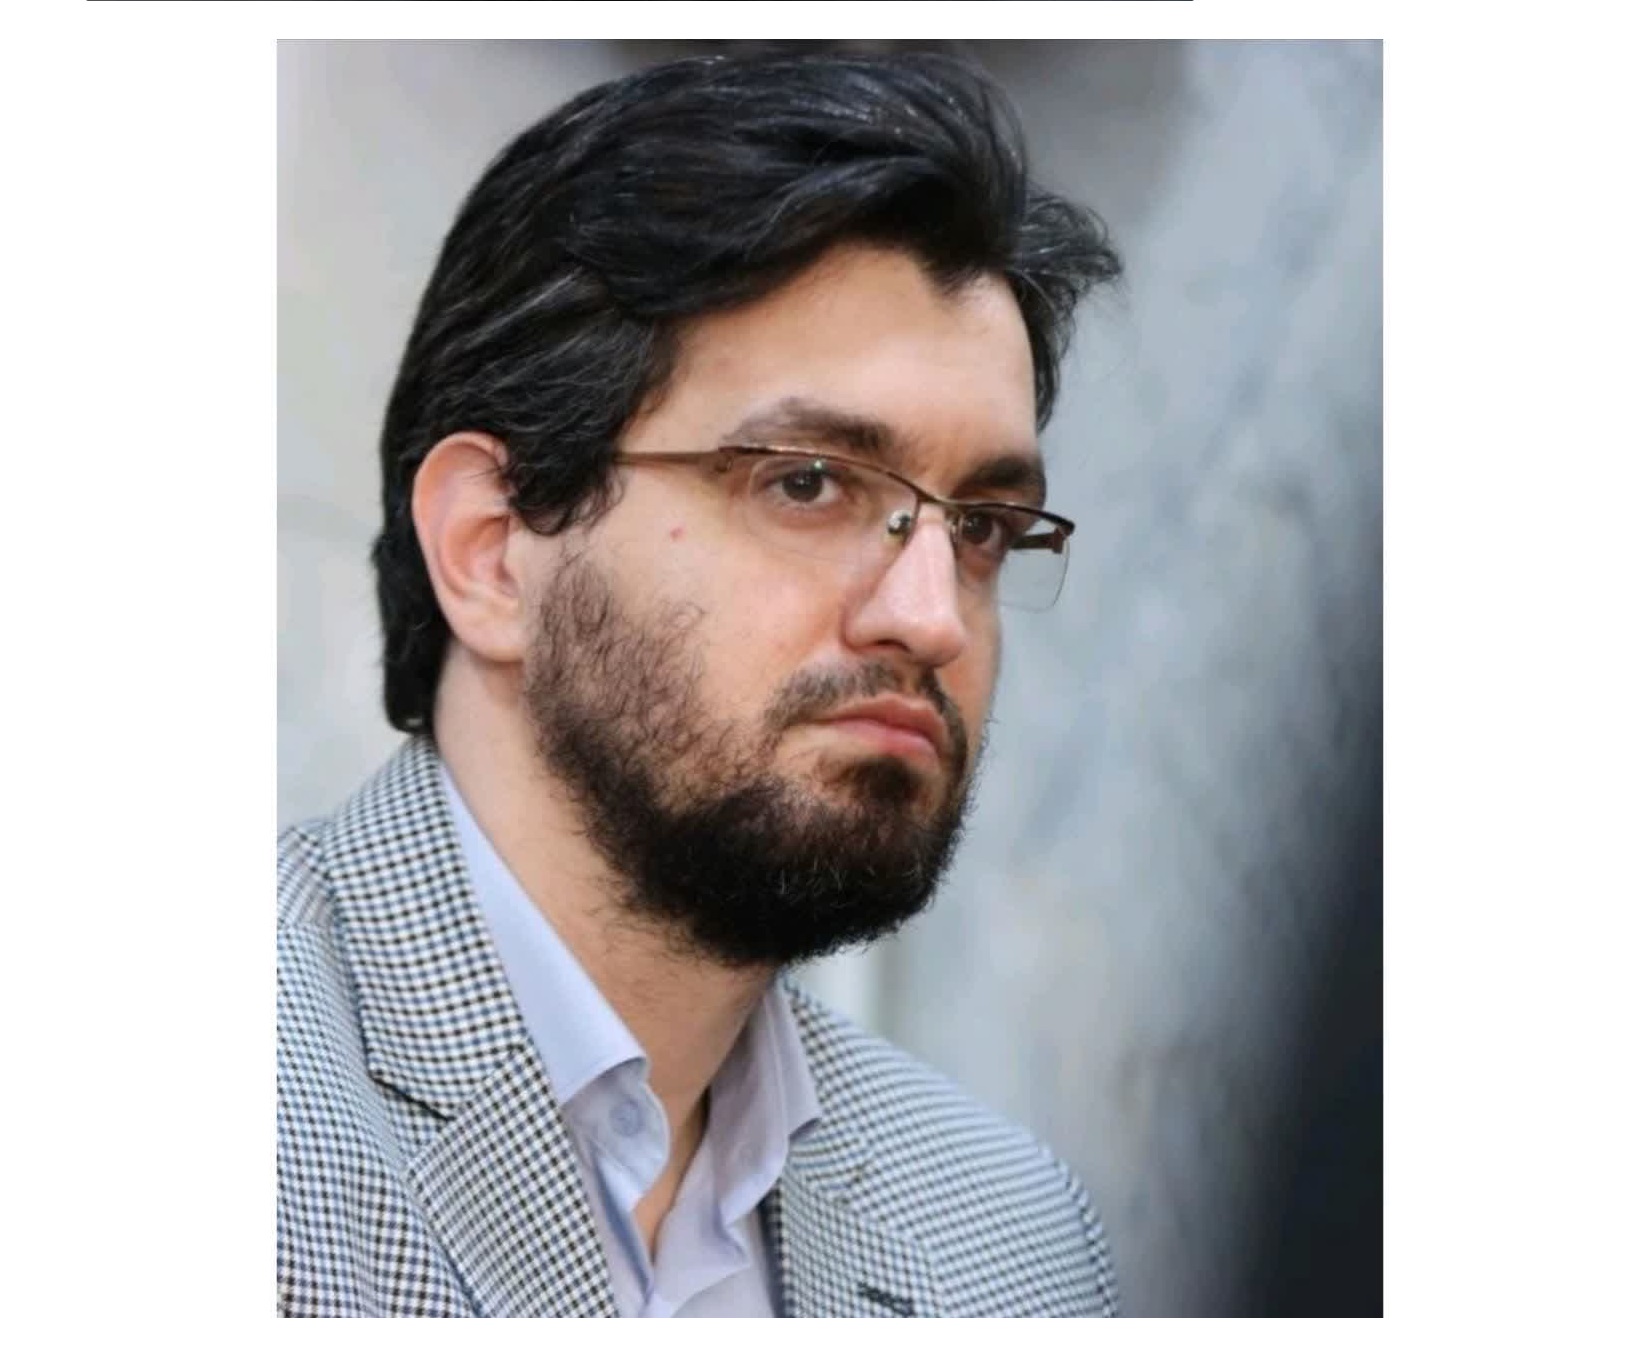 مجتبی احمدی، مدیرکل فنی و امور زیربنایی مناطق آزاد کشور شد